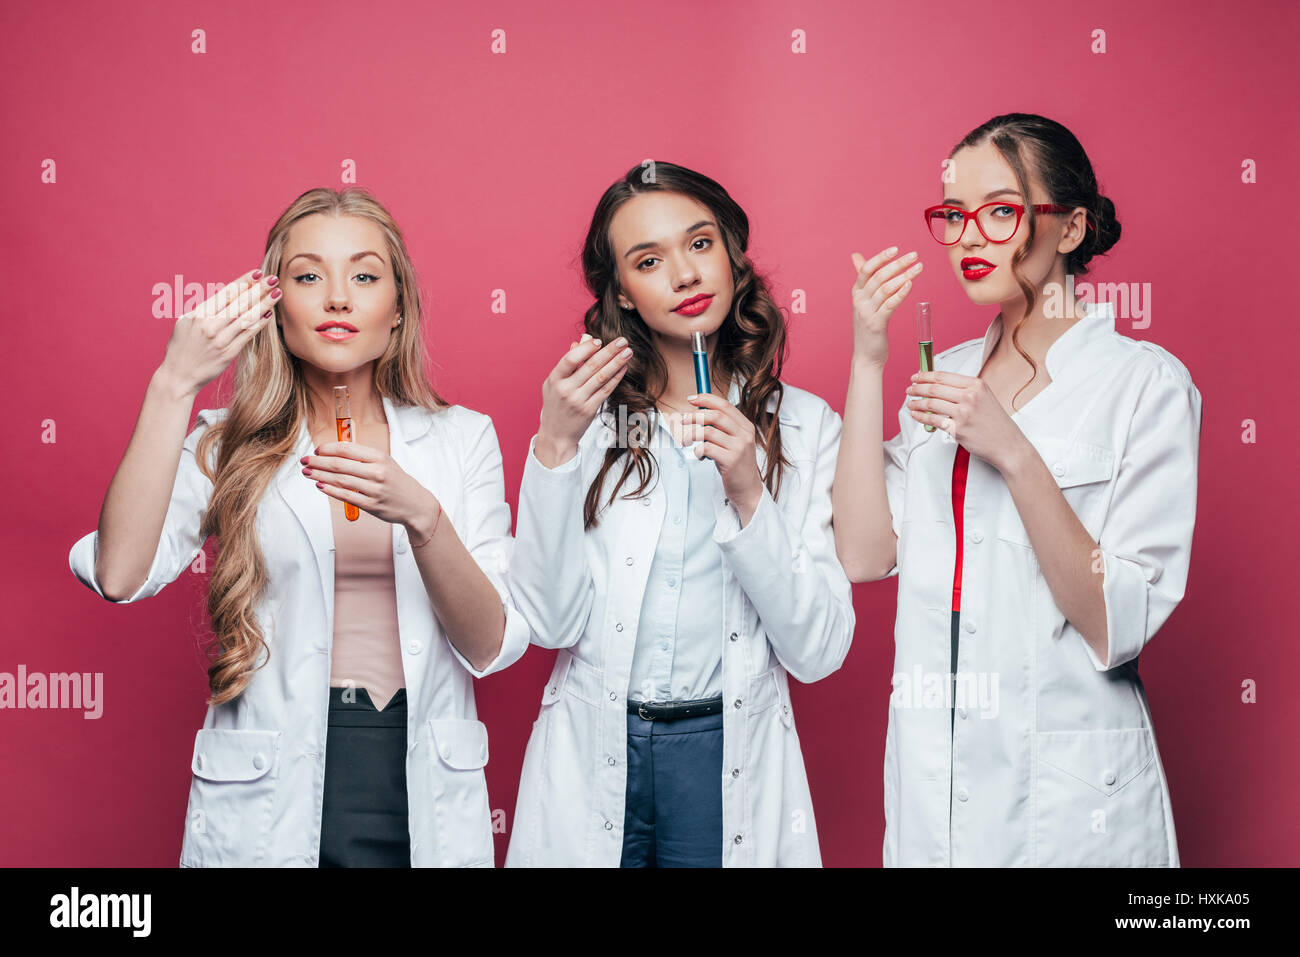 Ritratto di professionisti medici odore di provette in rosa Foto Stock